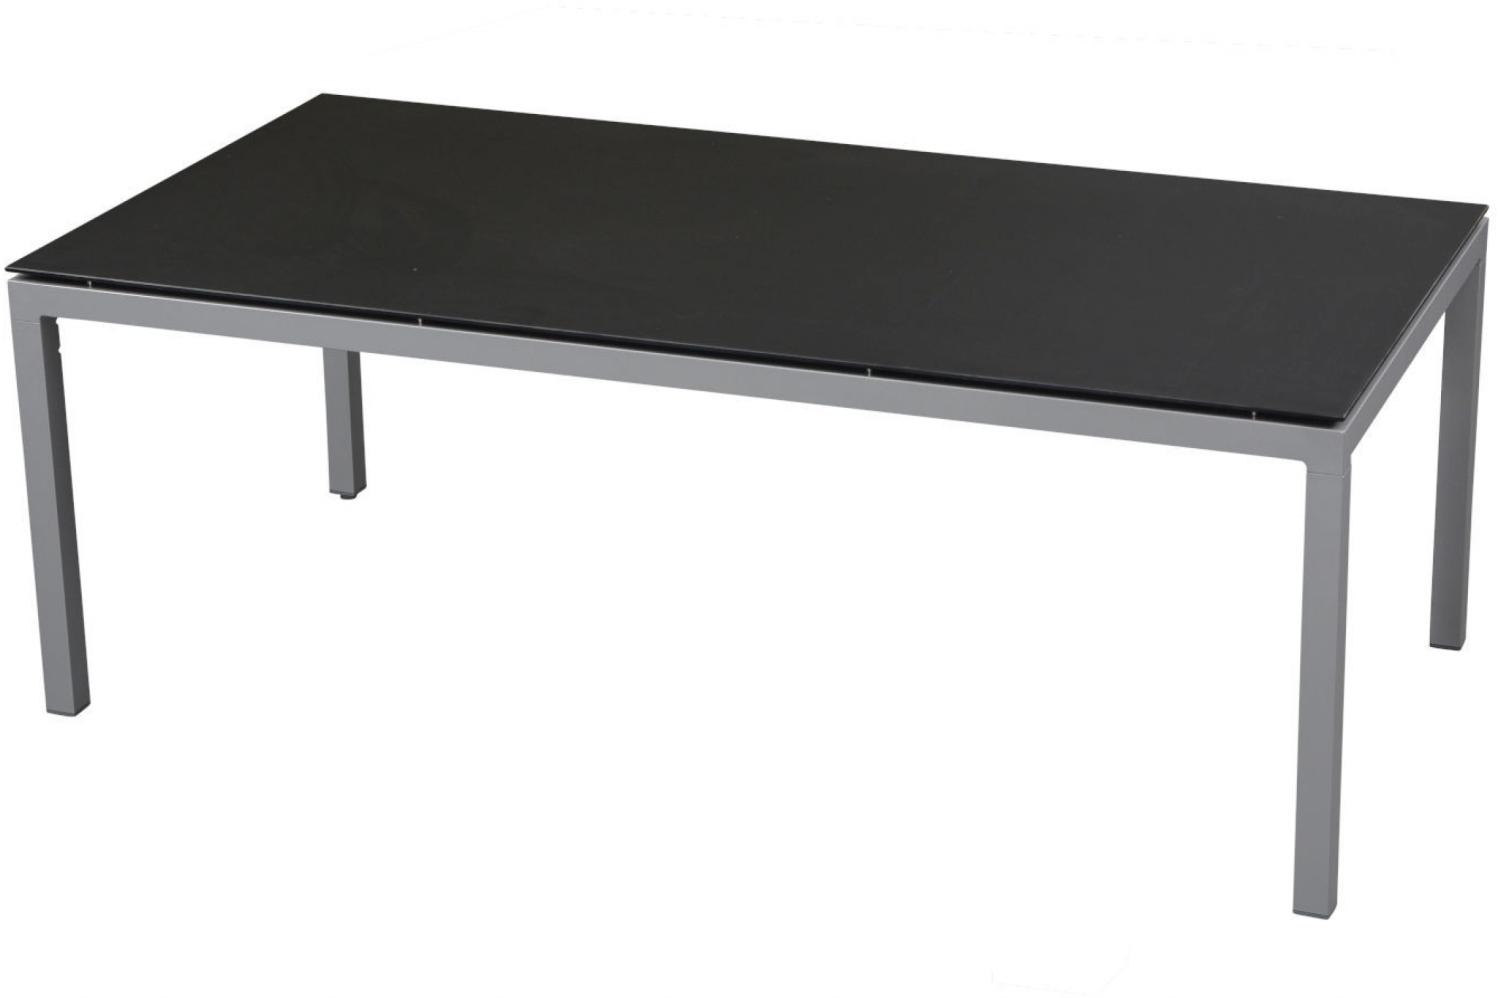 Inko Gartentisch Aluminium graphit 160x90 cm Terrassentisch Tischplatte nach Wahl Deropal schwarz Bild 1